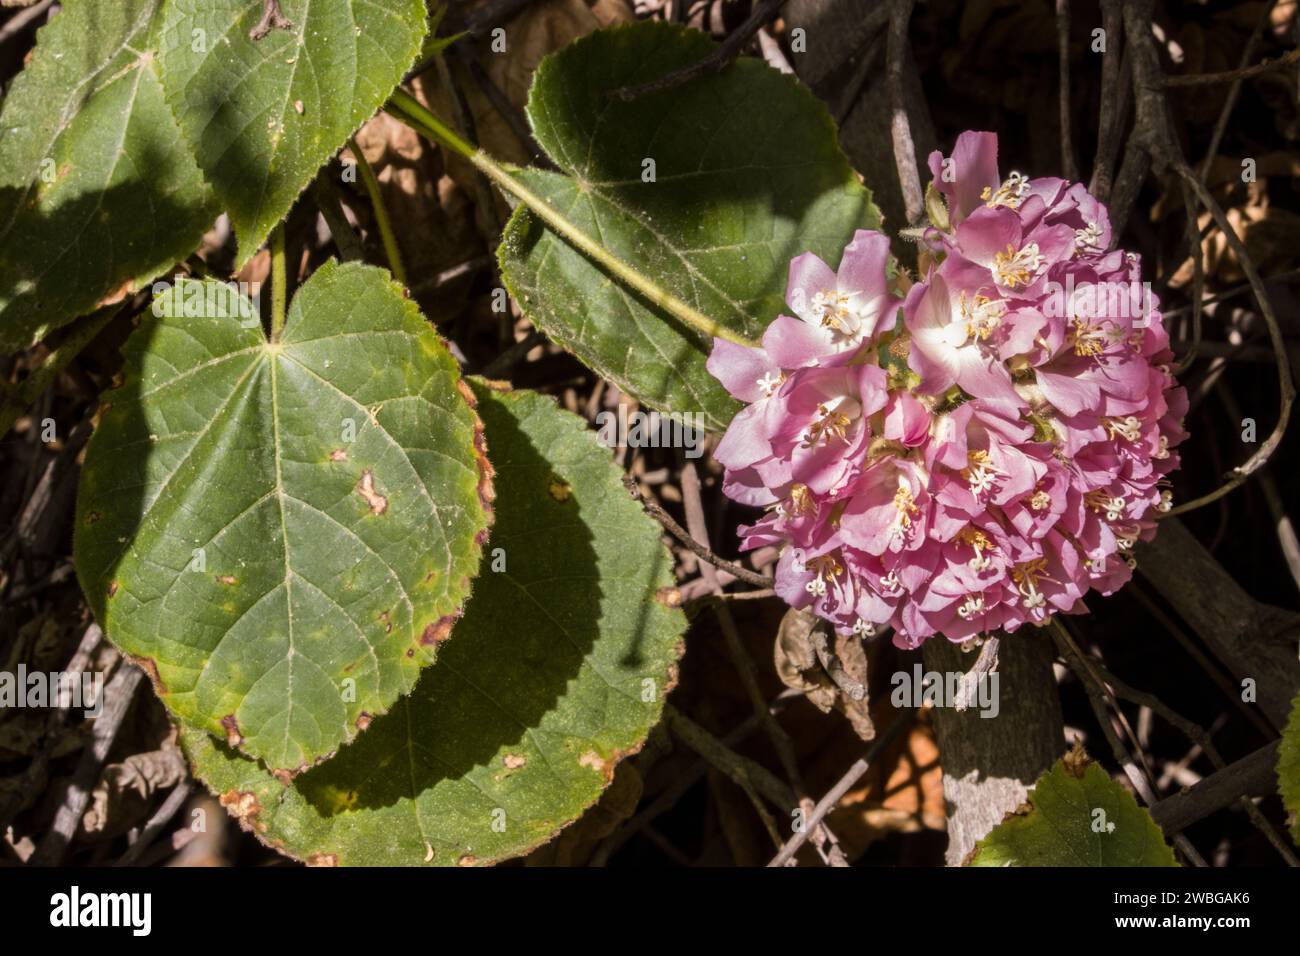 Dombeya wallichii im Botanischen Garten - Blütenstand, Maspalomas. Gran Canaria, Spanien Stock Photo